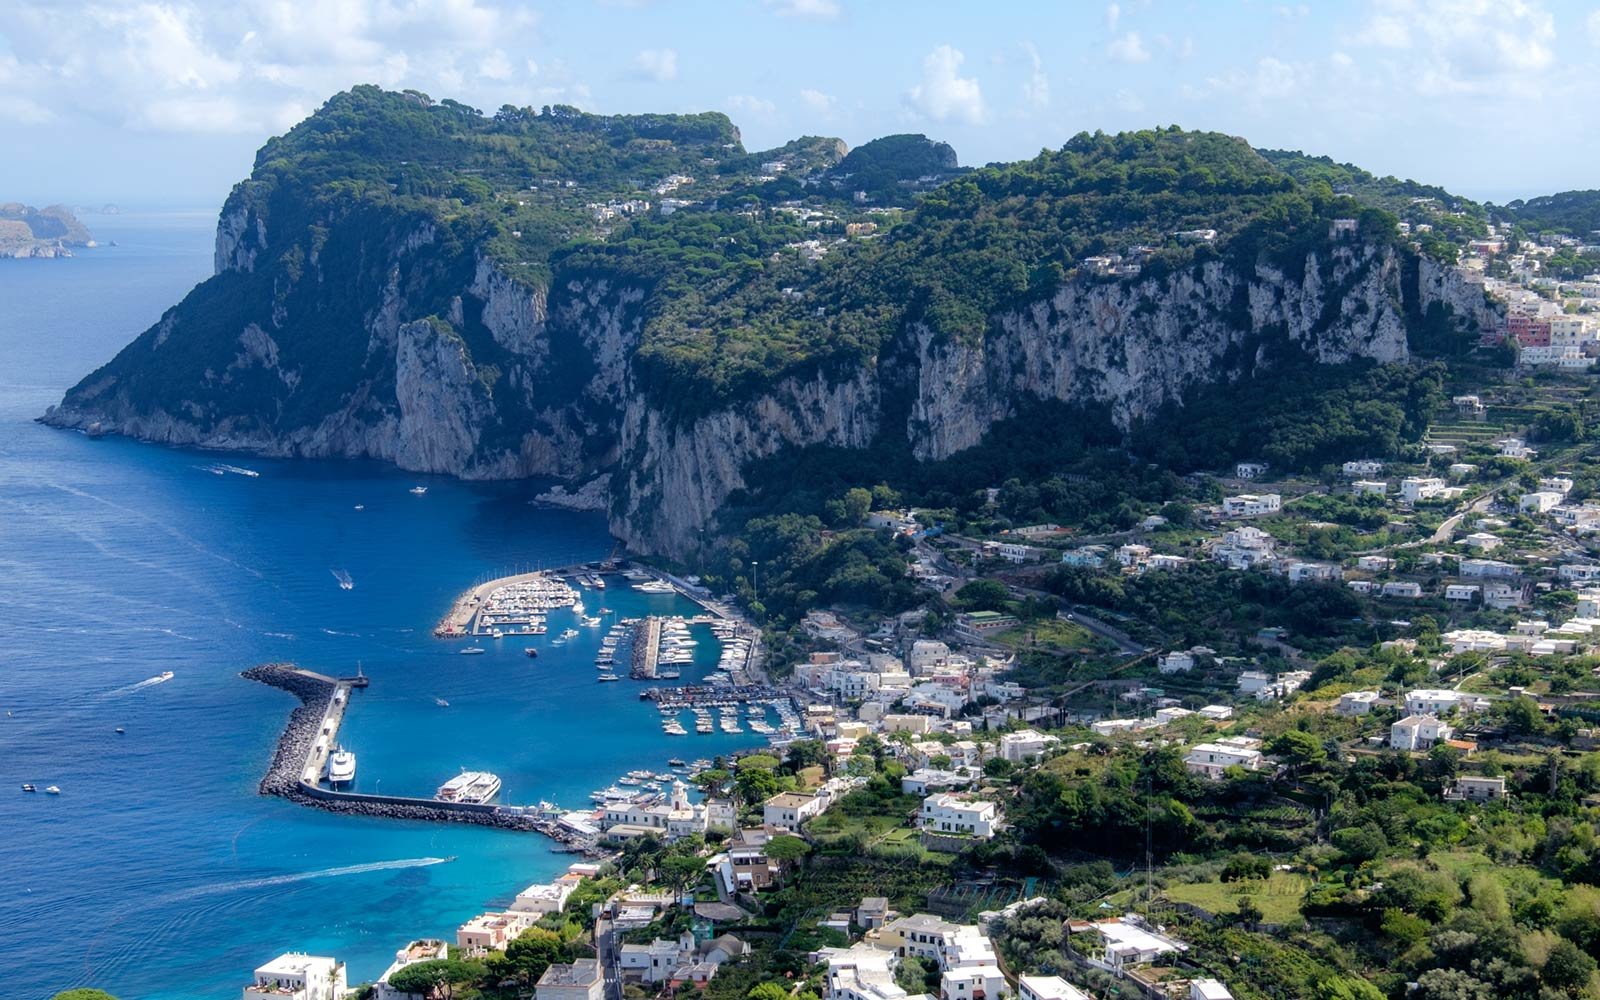 “Una catena tra terra e mare, dall’ager nolanus all’isola azzurra”: prosegue il progetto che lega Capri al Nolano